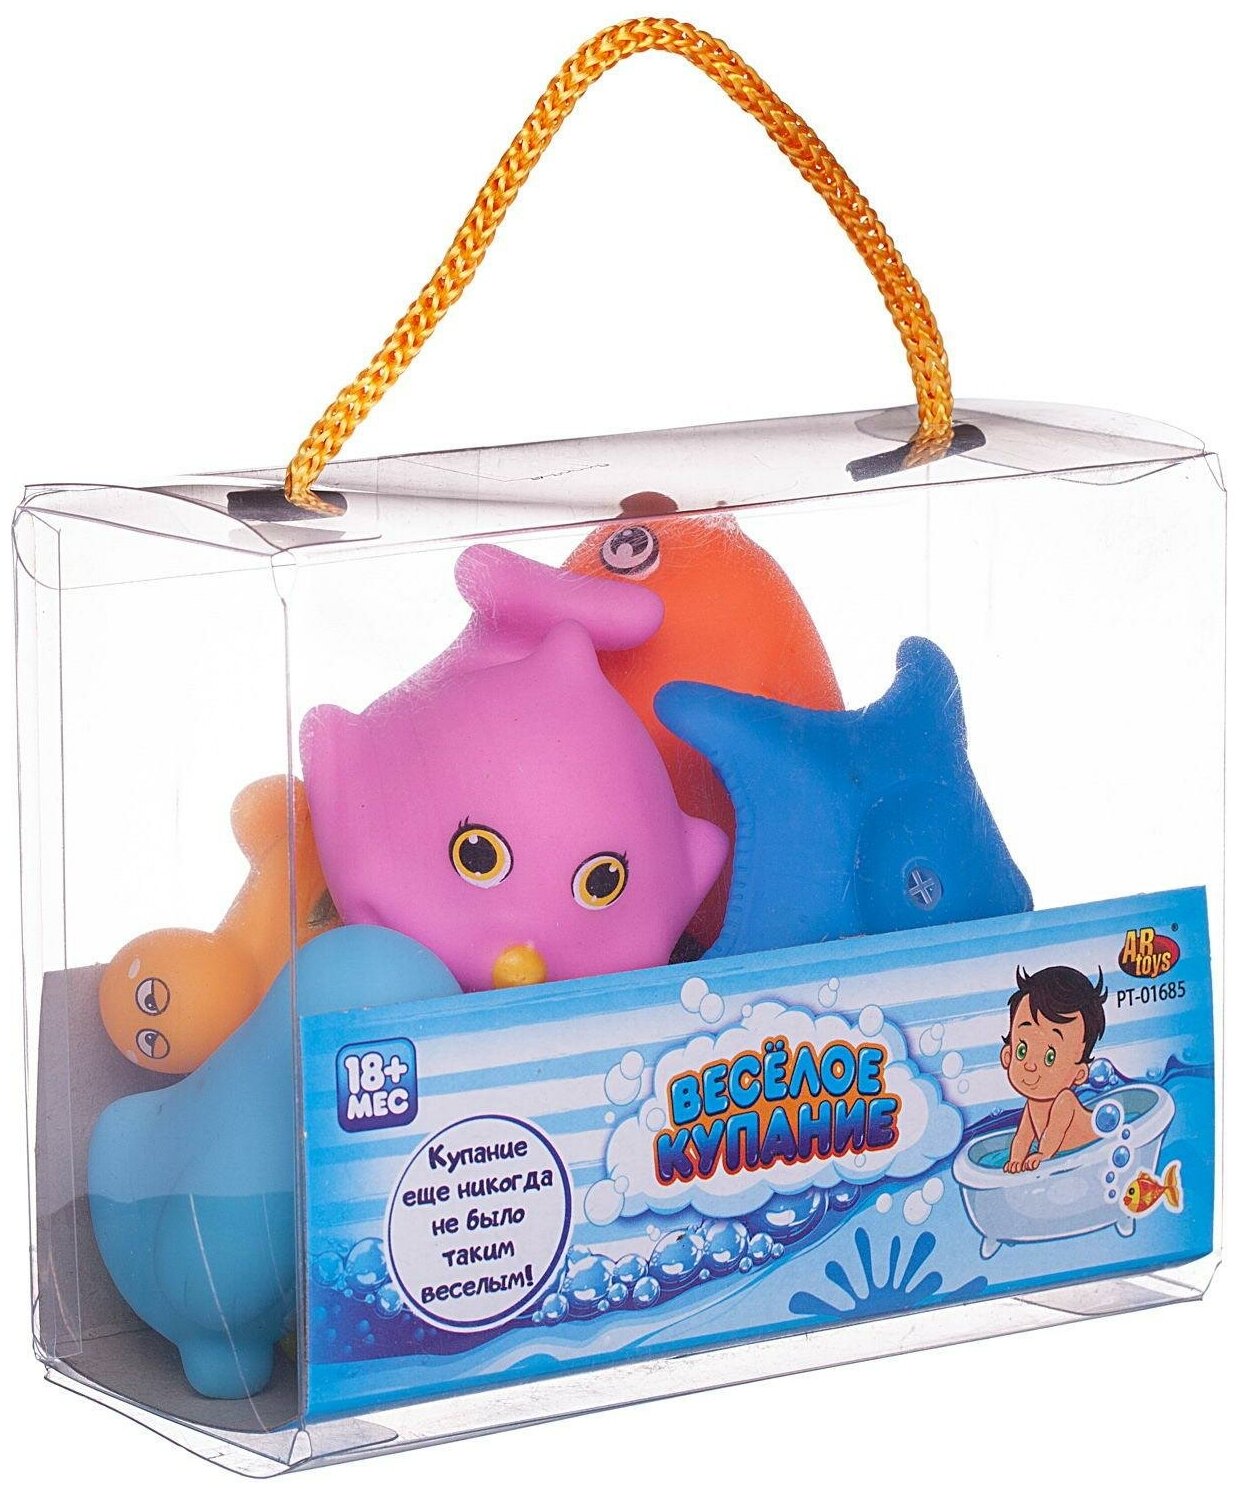 Набор резиновых игрушек для ванной Abtoys Веселое купание 8 предметов (набор 1), в сумке PT-01685